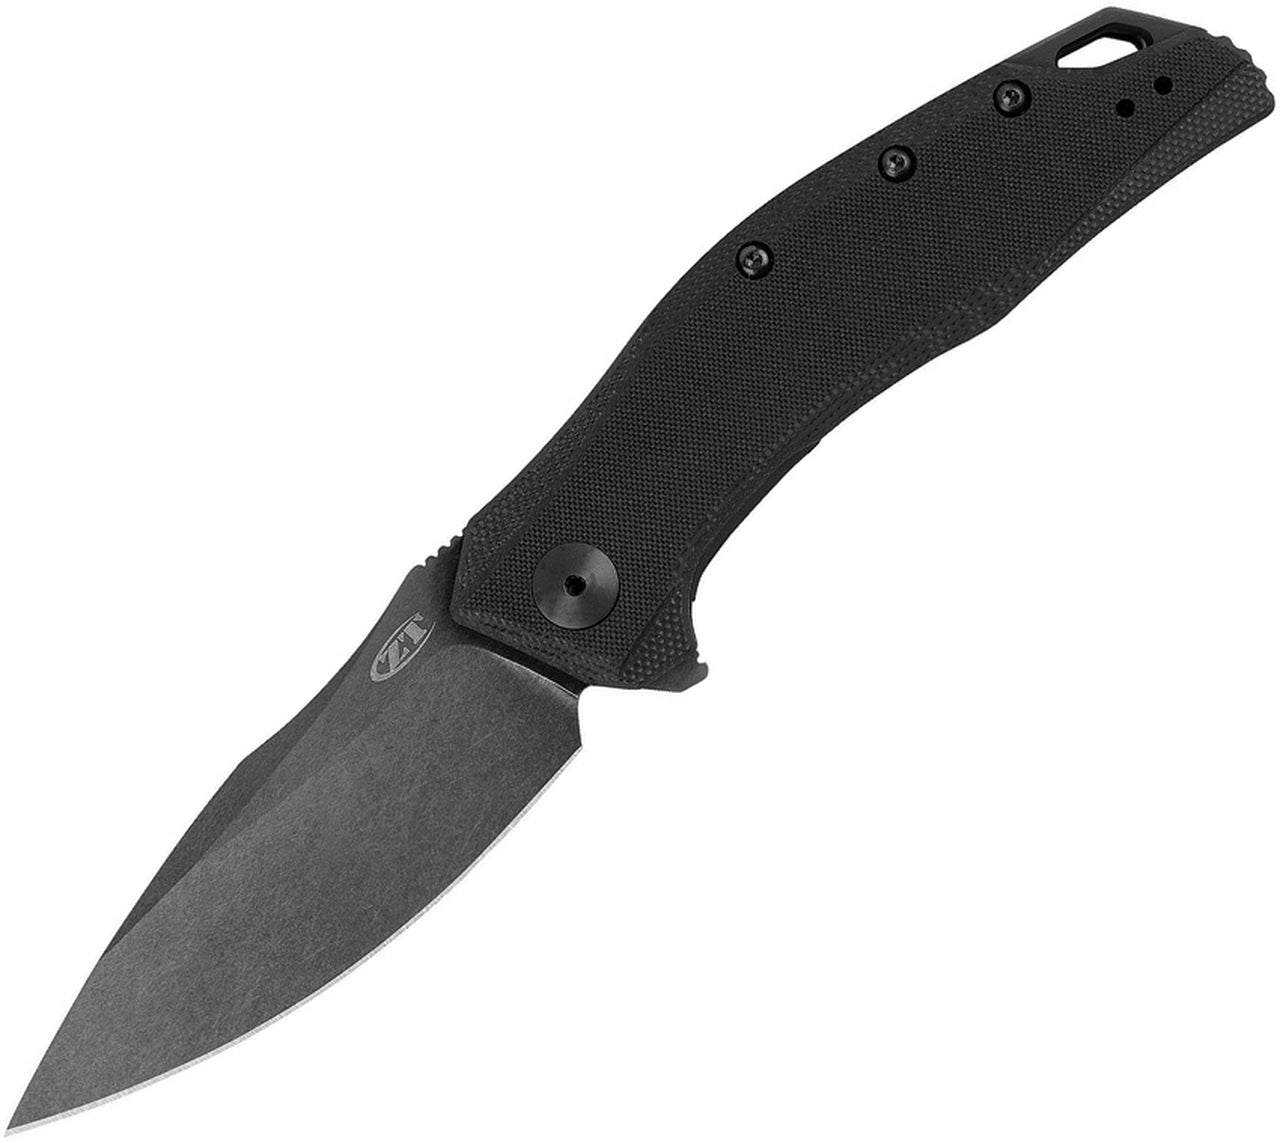 Zero Tolerance 0357BW - ZT Original Design - 3.25 Inch Drop Point Blade - Stainless Steel Blade with Blackwash Finish